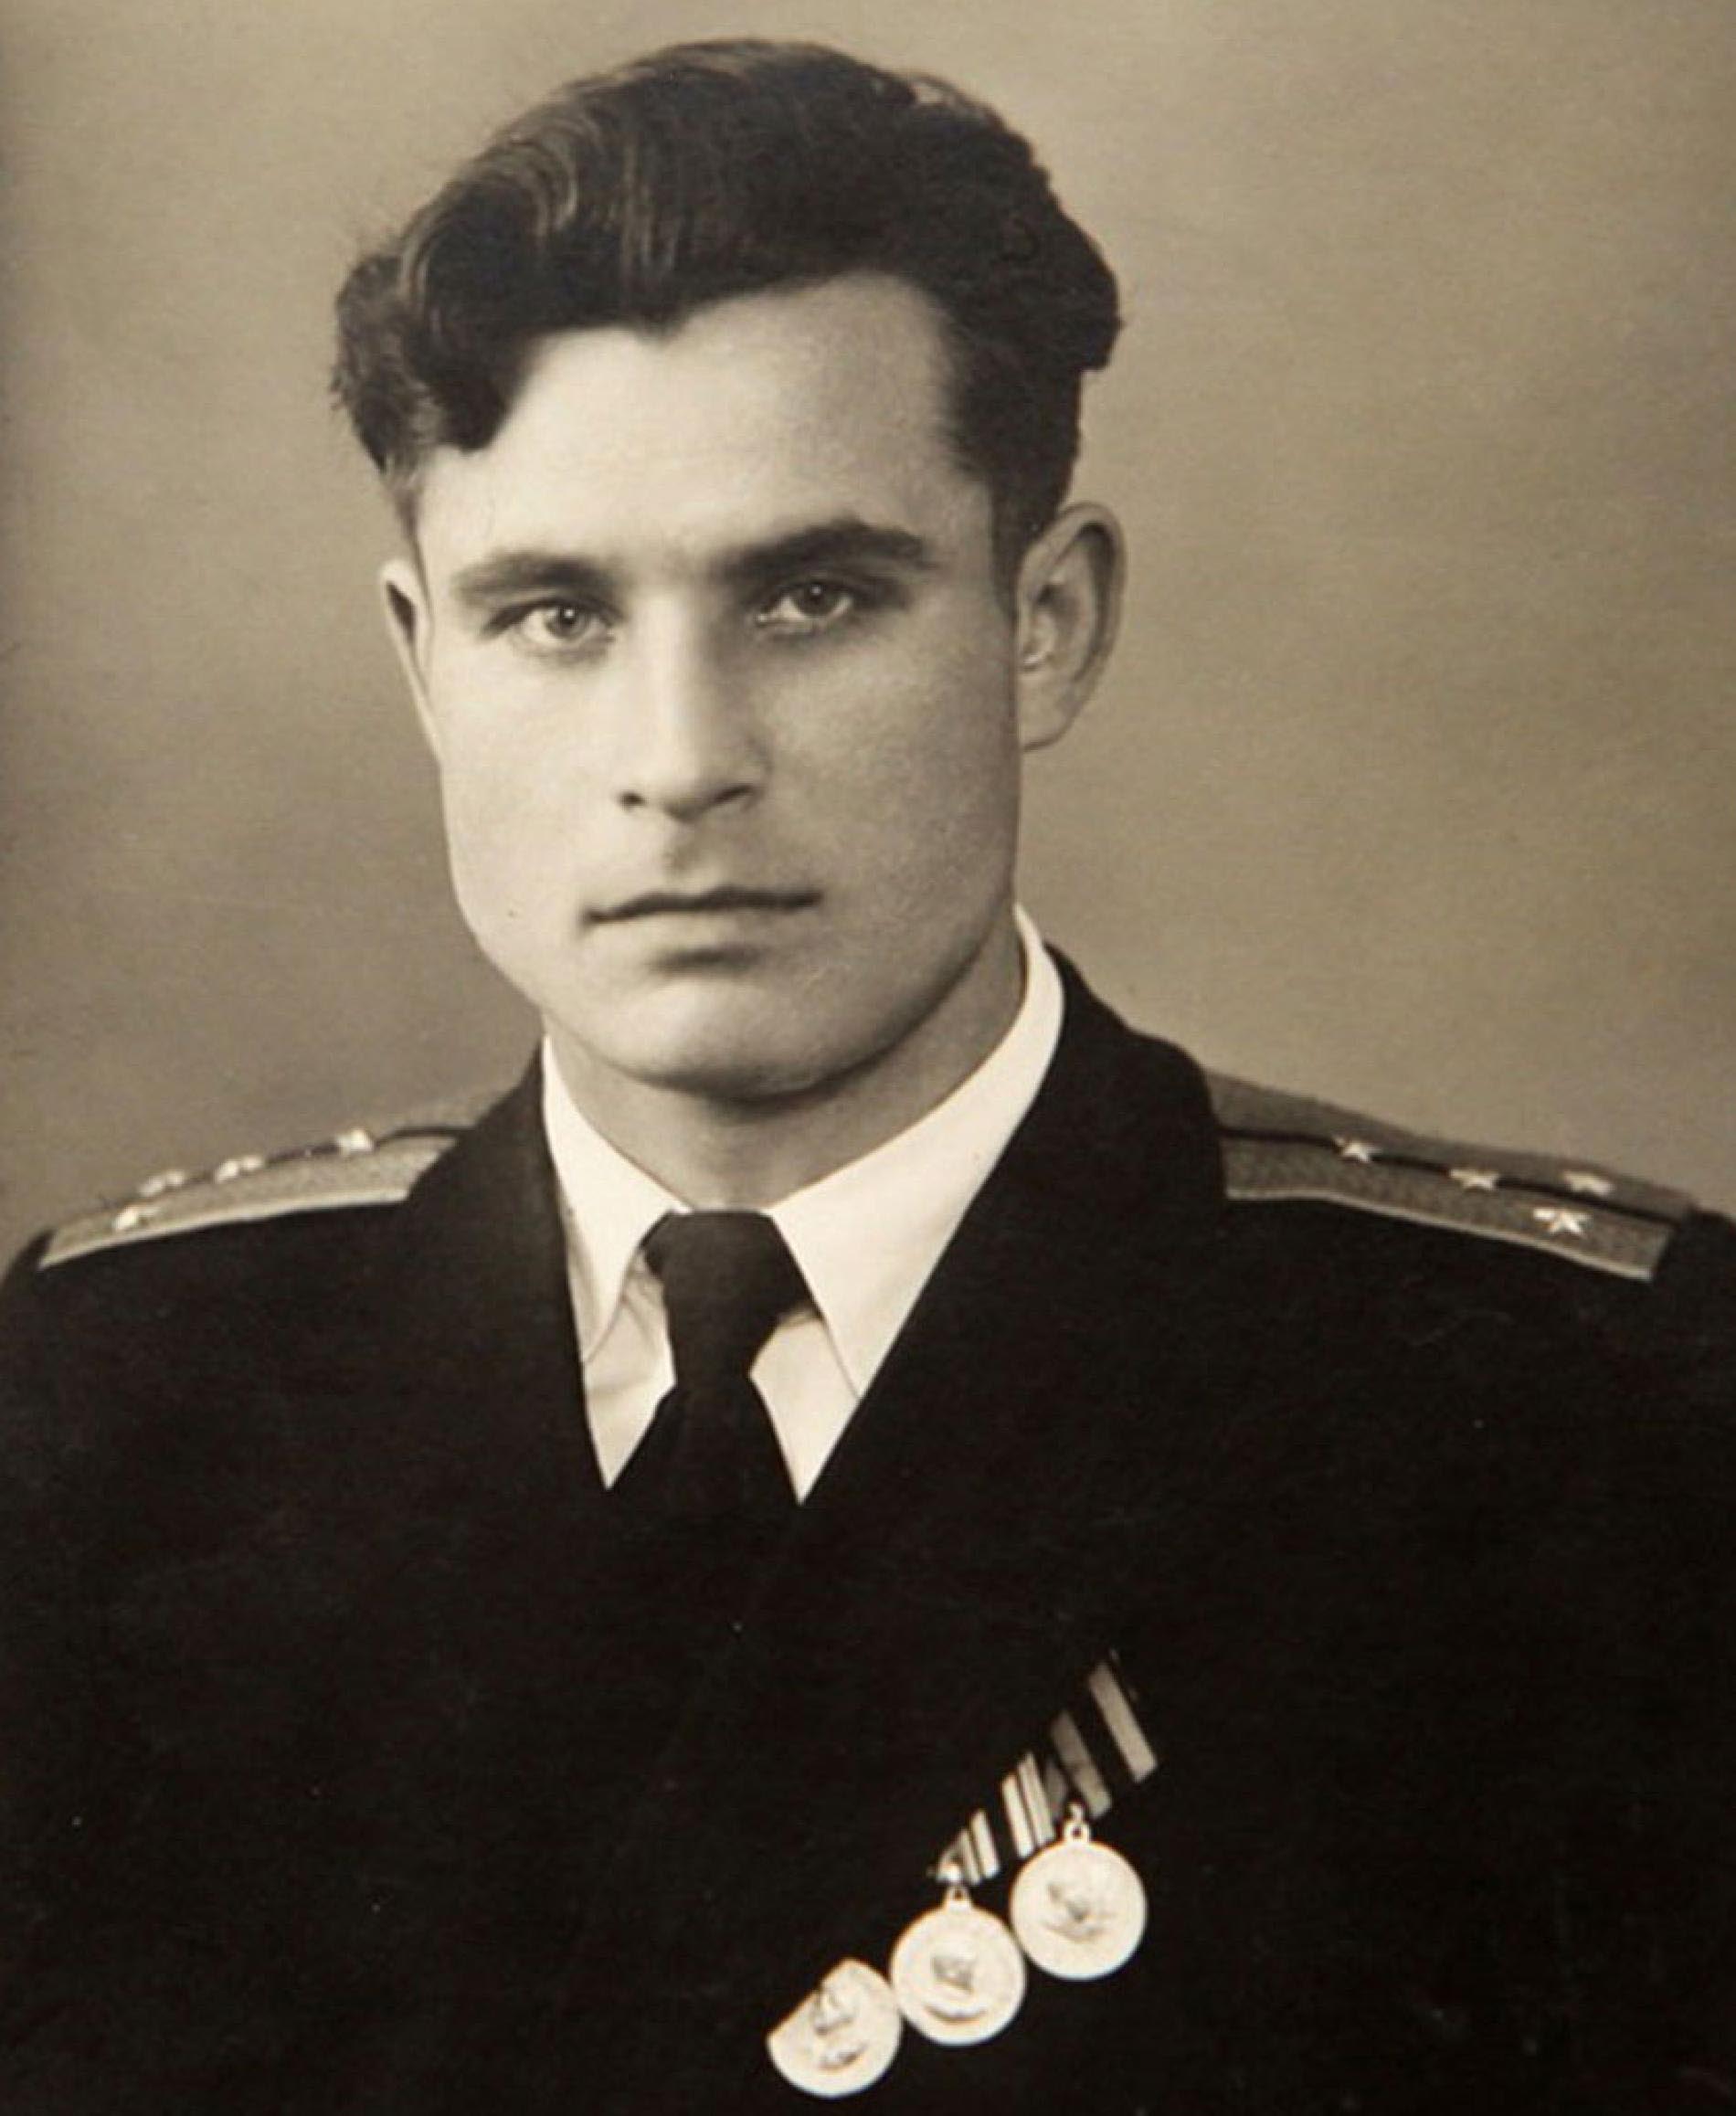 Vasilij Arkhipov (Zvorkovo, 30 gennaio 1926 – Zheleznodorozhny, 19 agosto 1998), l’ufficiale della Marina sovietica che con il suo No al lancio di un missile a testata atomica durante la crisi di Cuba salvò il mondo da un conflitto nucleare.